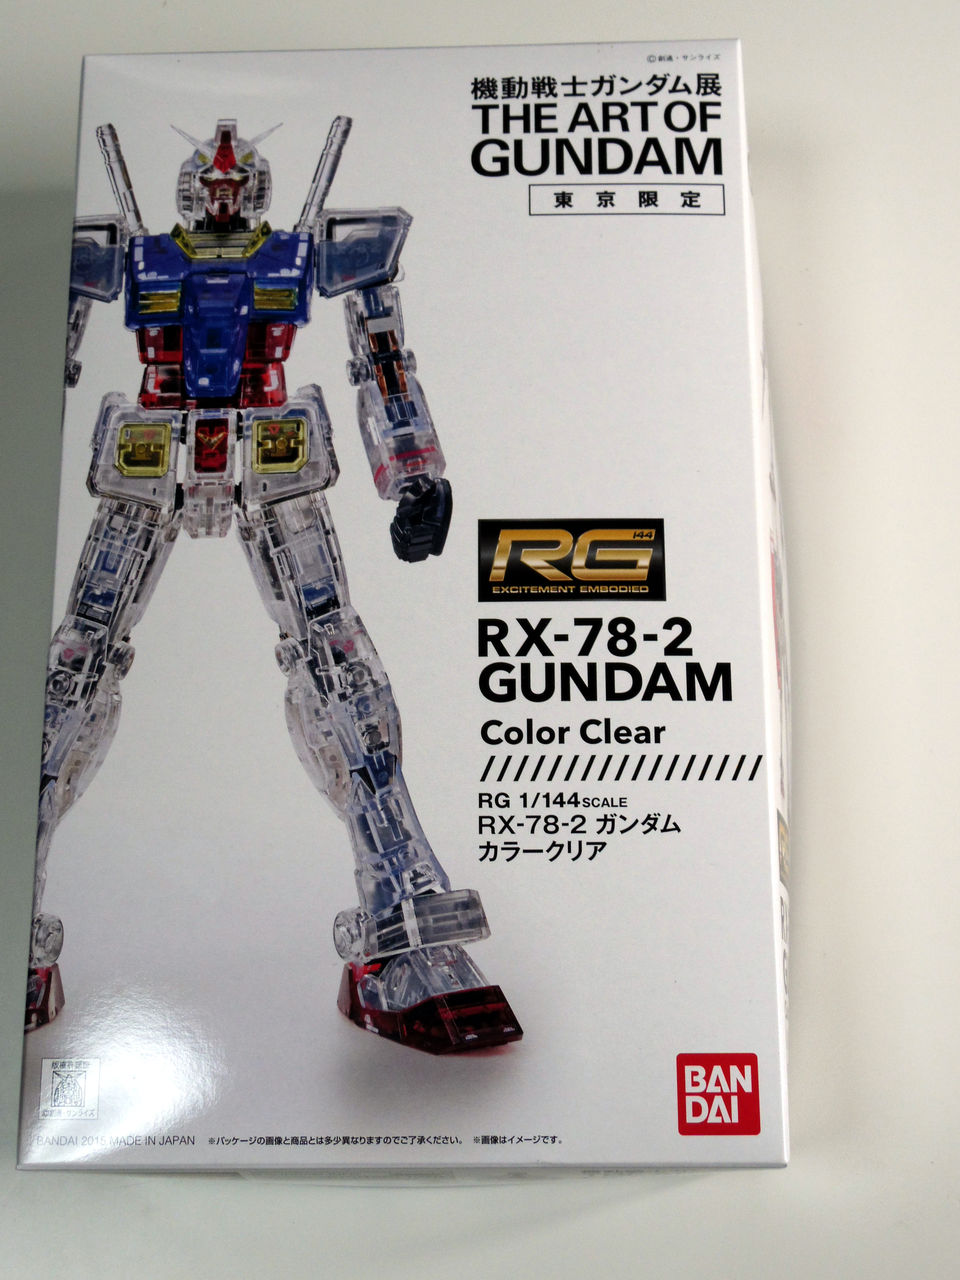 機動戦士ガンダム展 The Art Of Gundam ガンプラセット券 が届いたよ アキバ系に憧れて